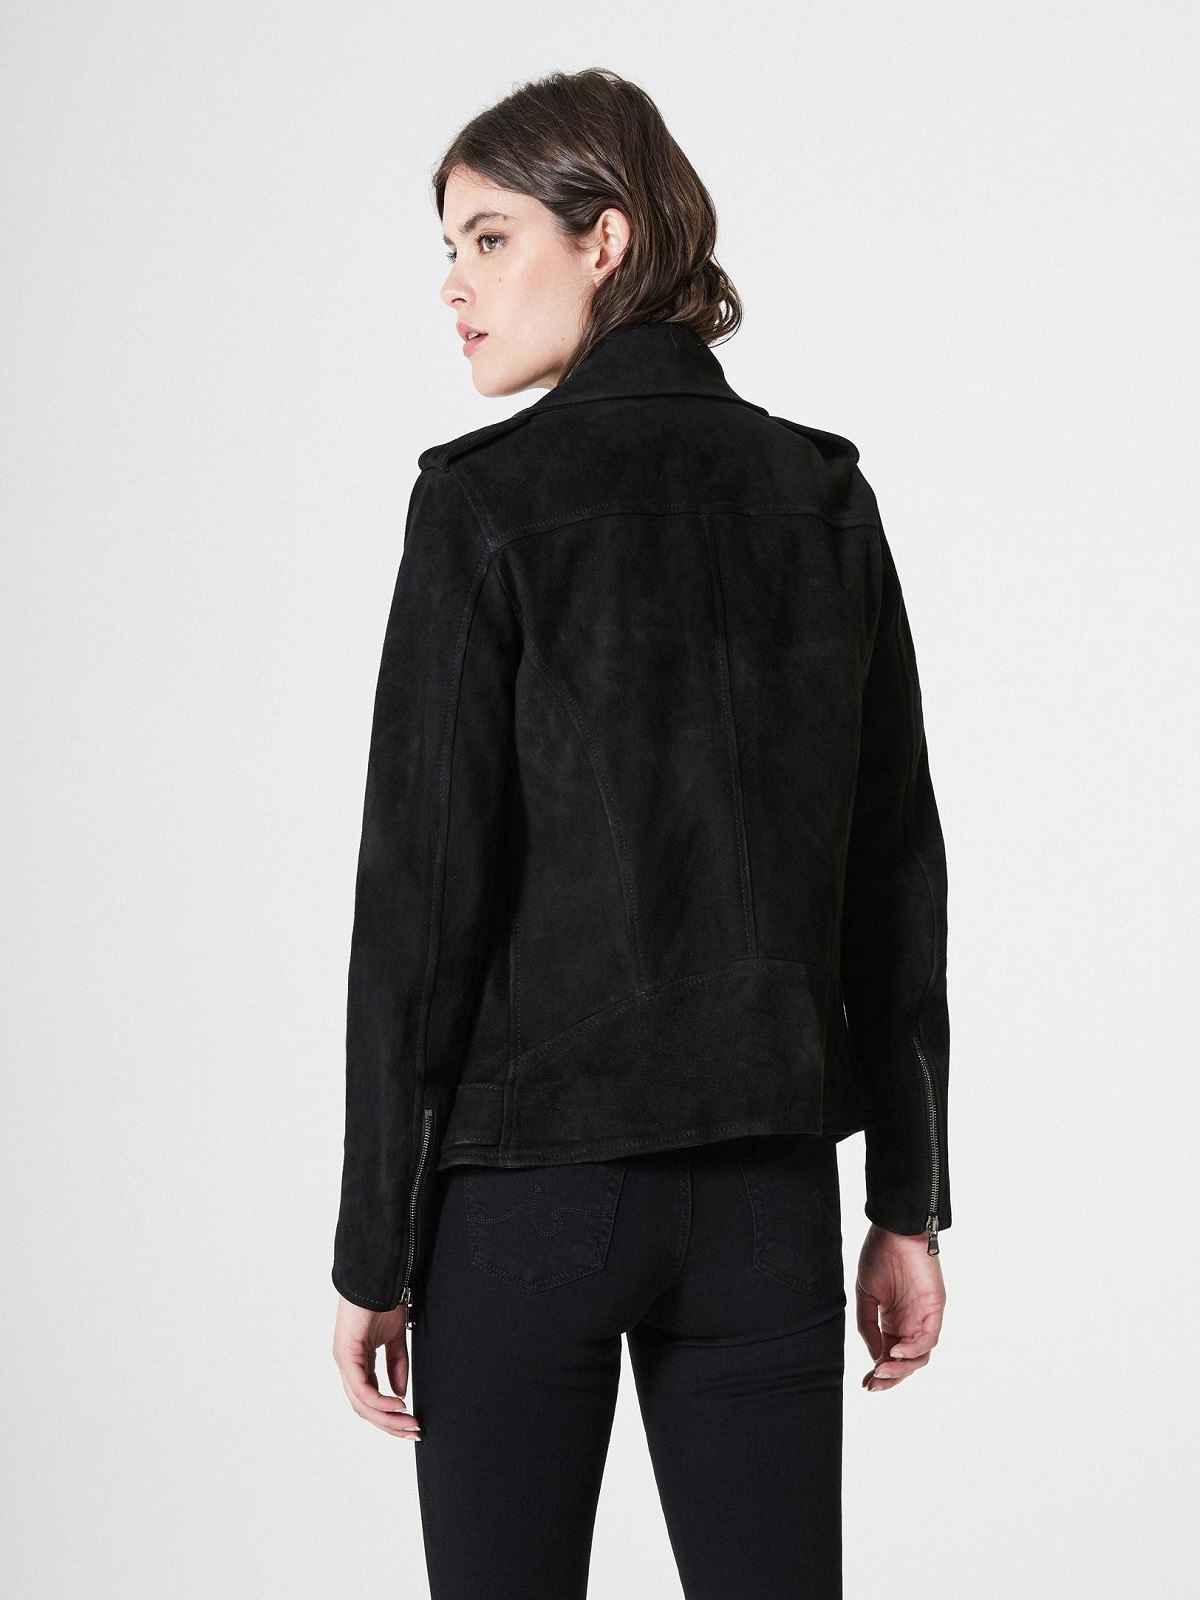 Black Suede Leather Jacket For Women - LJ.com